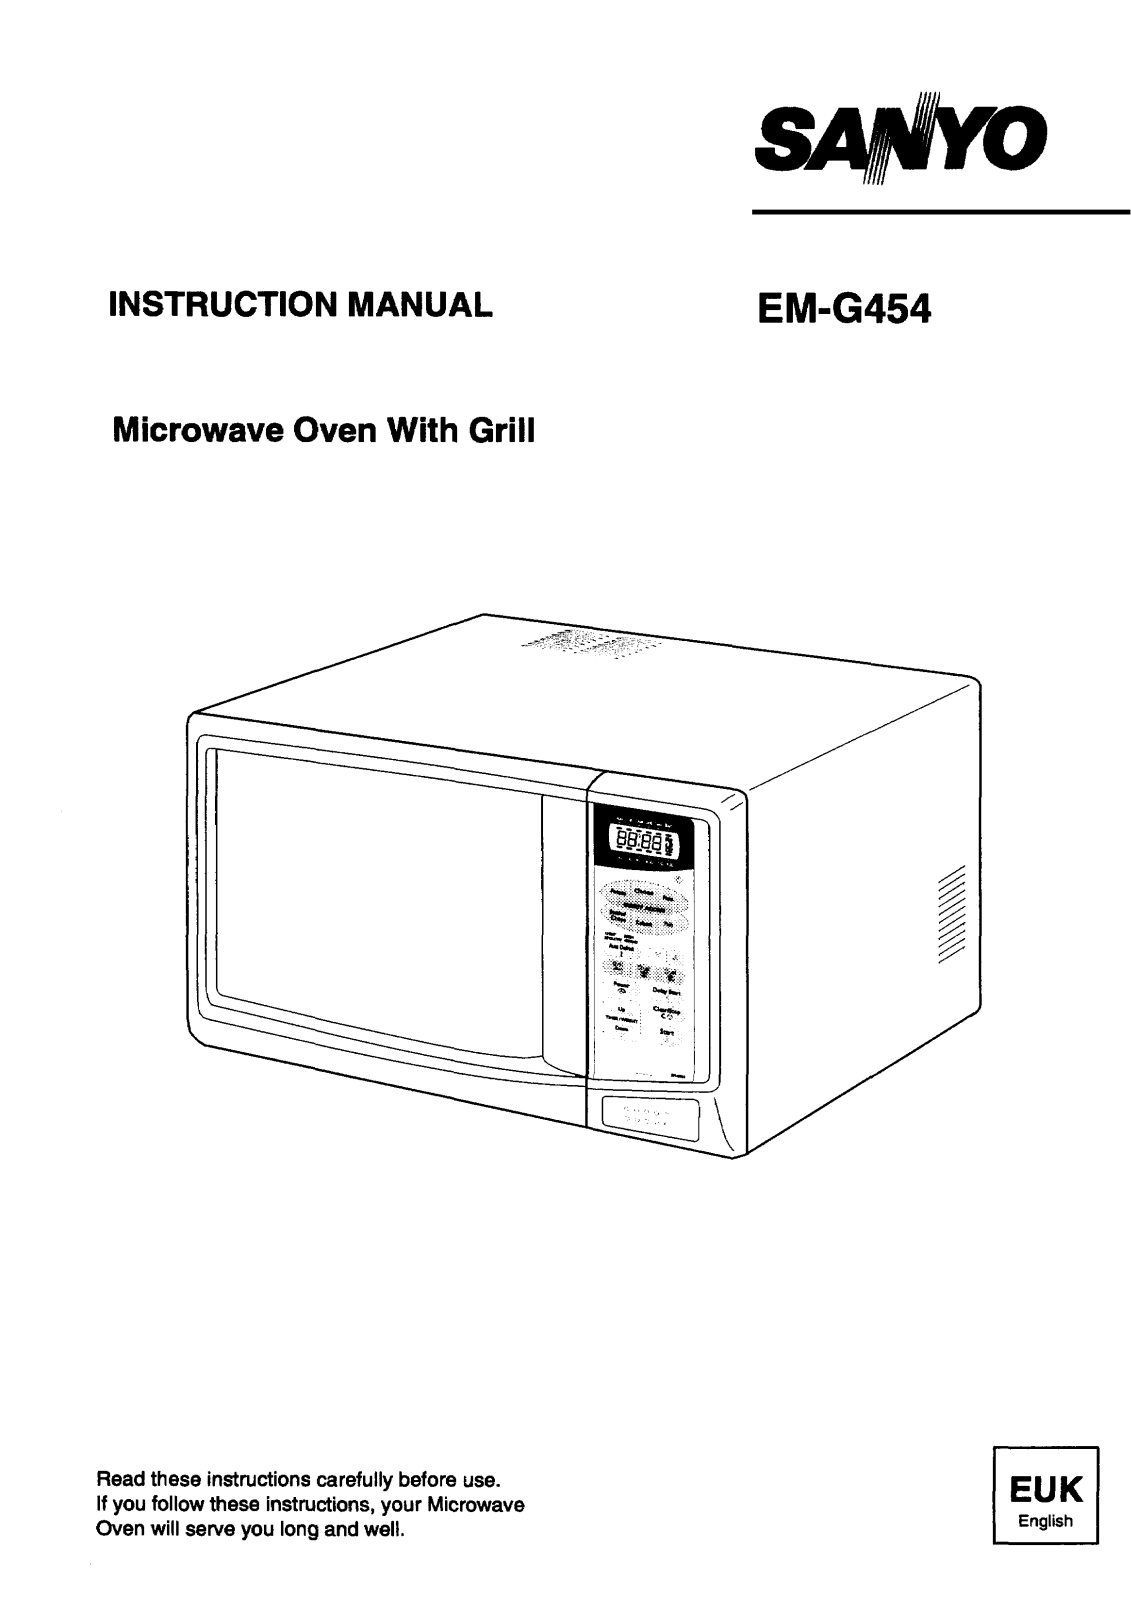 Sanyo EM-G454 Instruction Manual